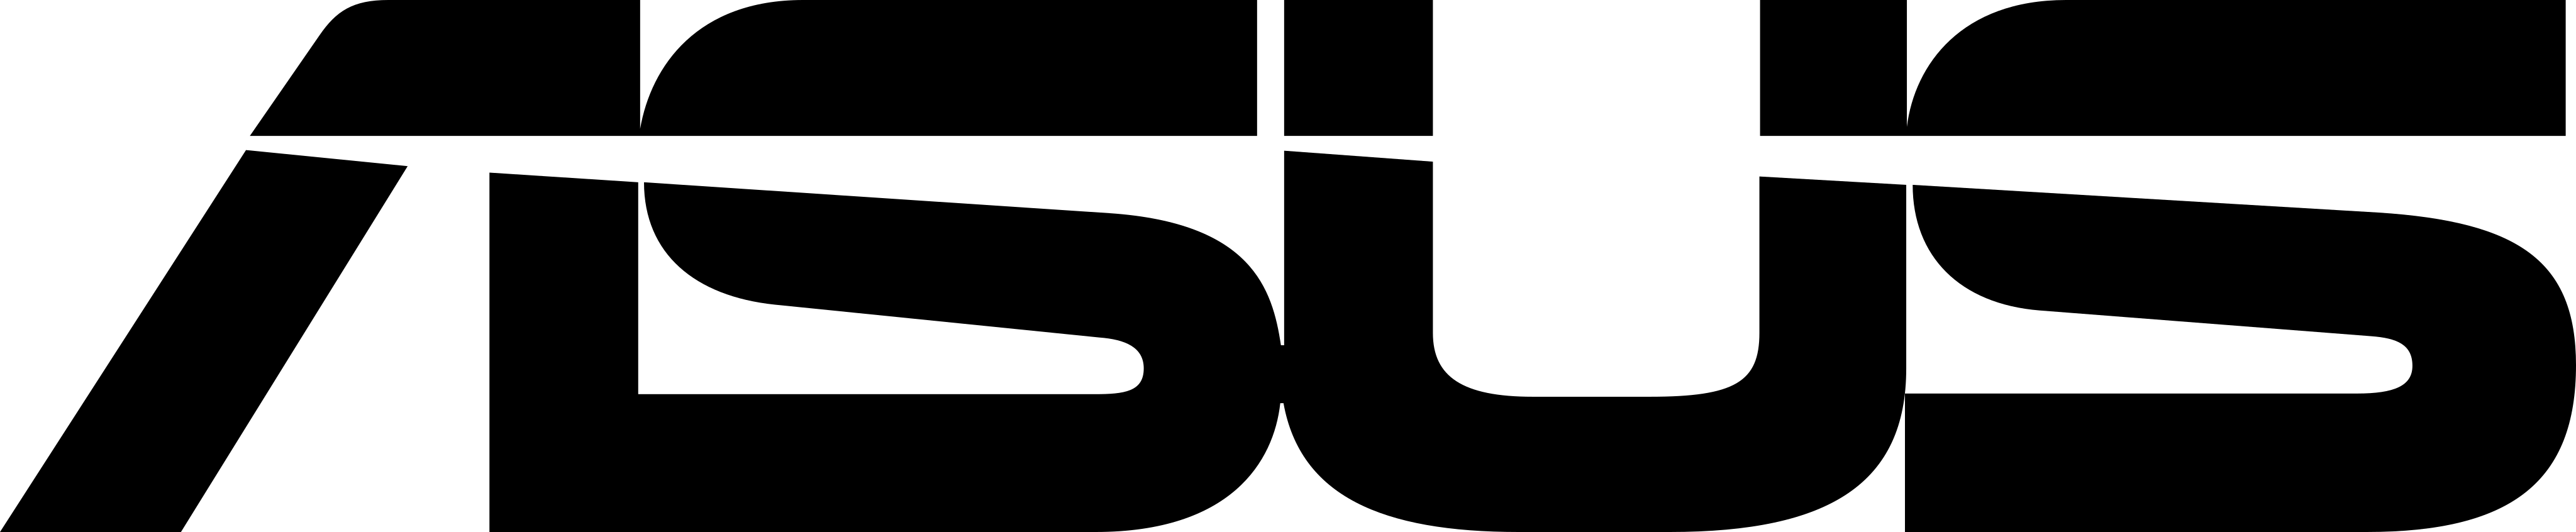 Detail Font Logo Asus Nomer 47